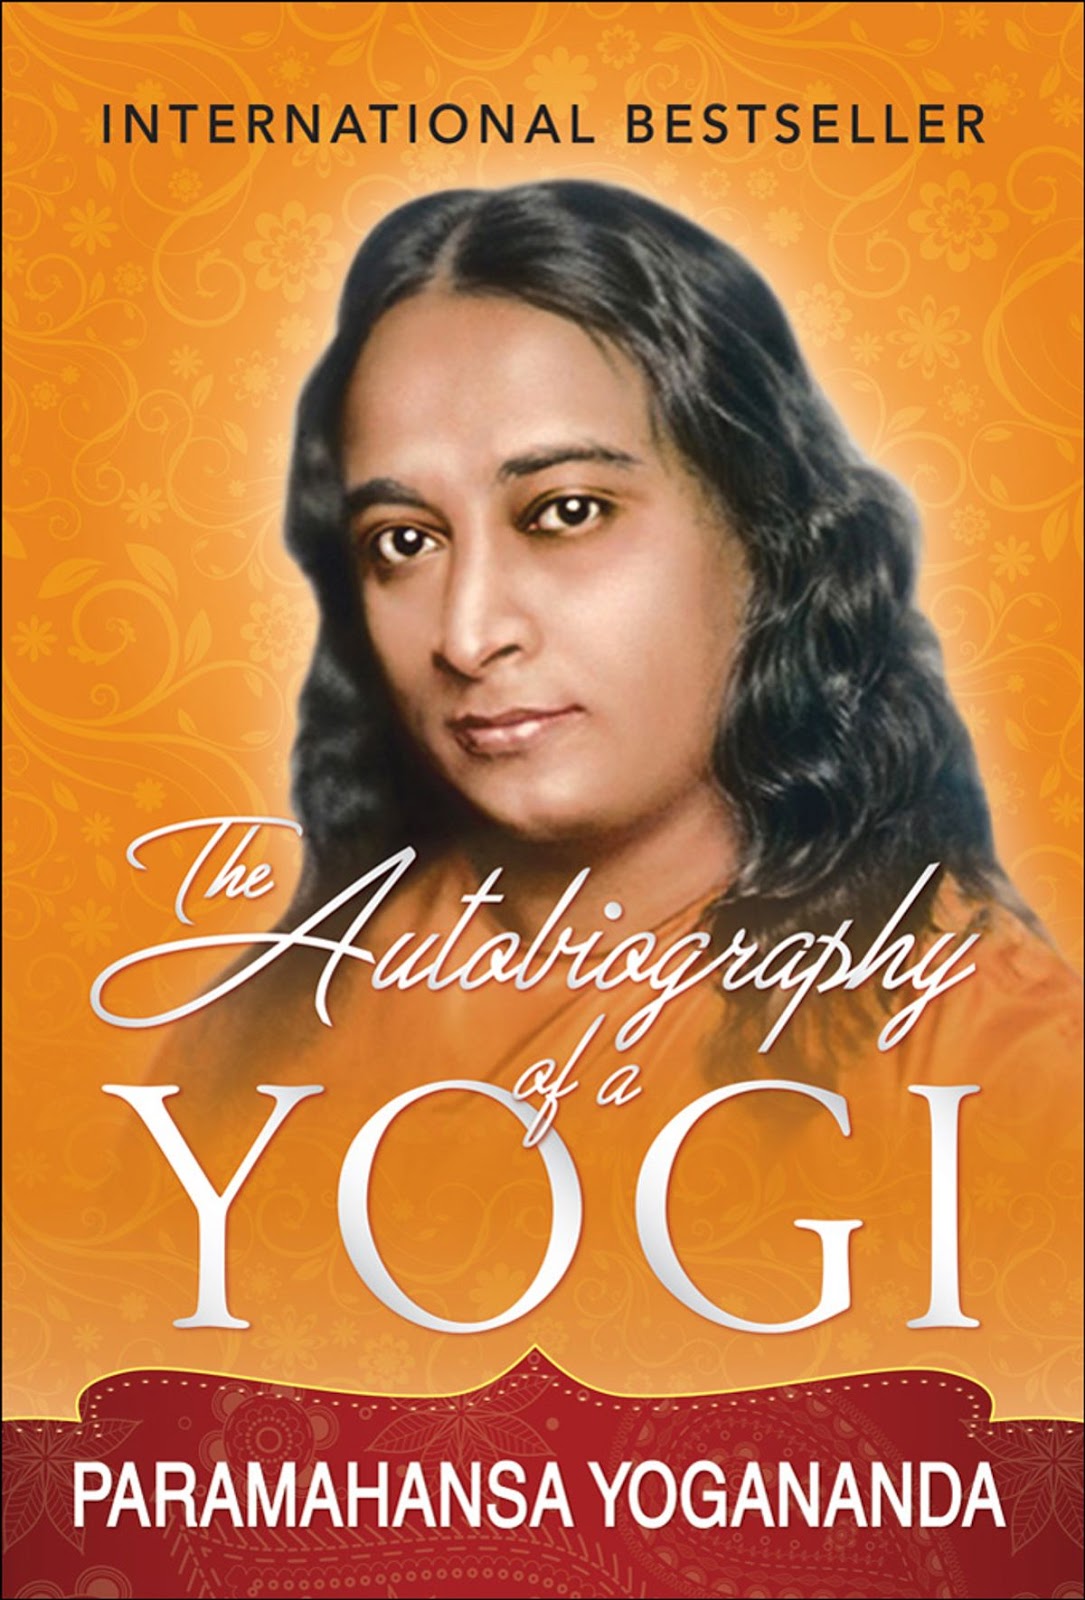 autobiography of yogi epub